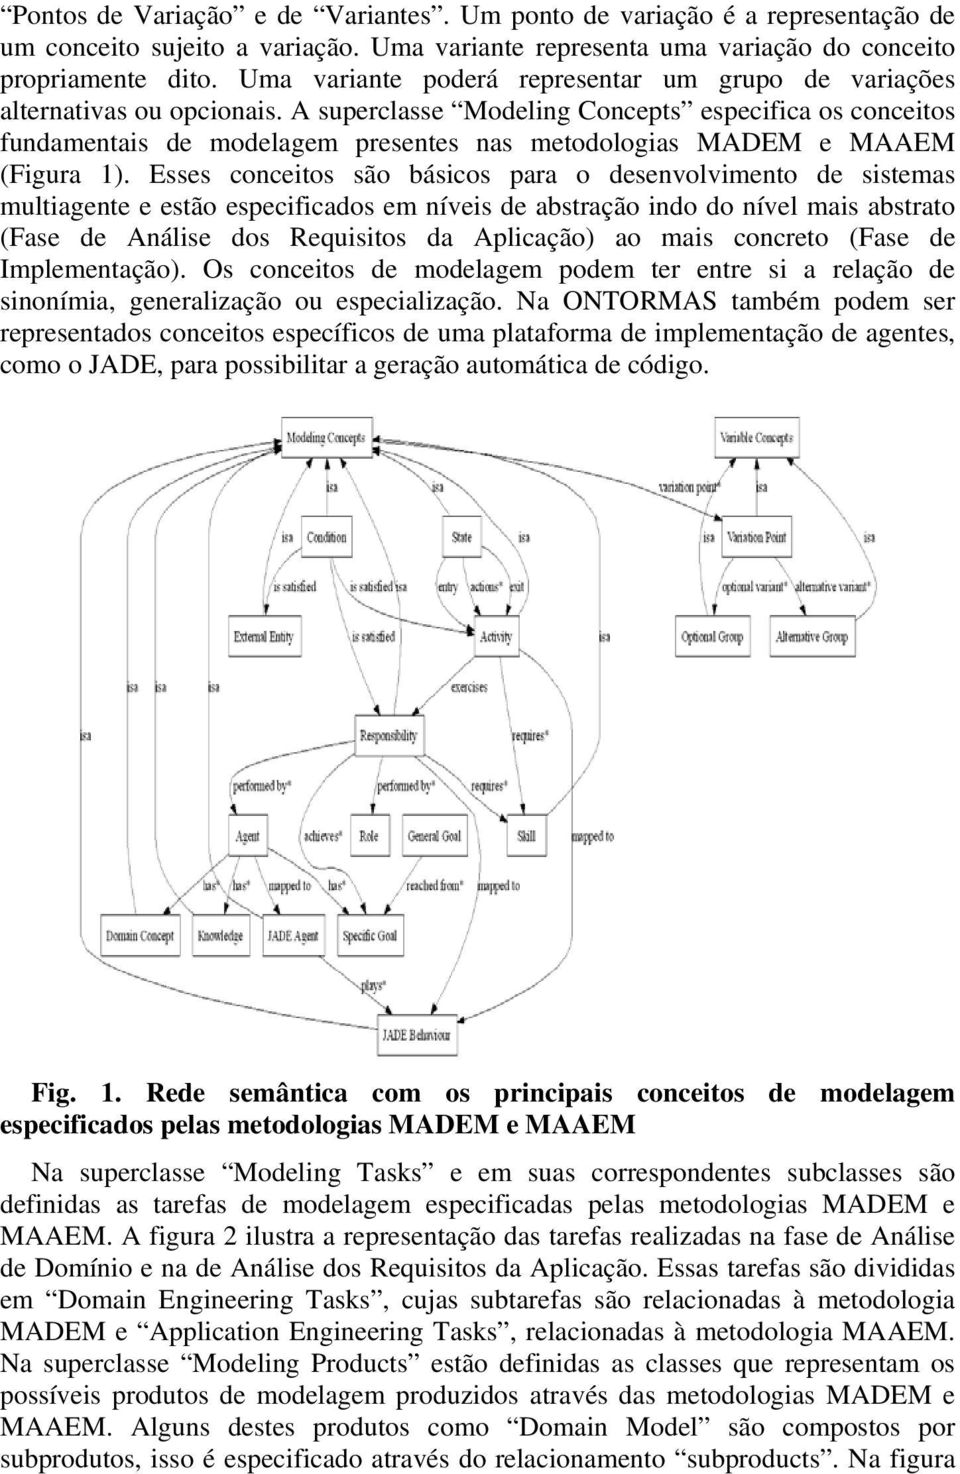 A superclasse Modeling Concepts especifica os conceitos fundamentais de modelagem presentes nas metodologias MADEM e MAAEM (Figura 1).